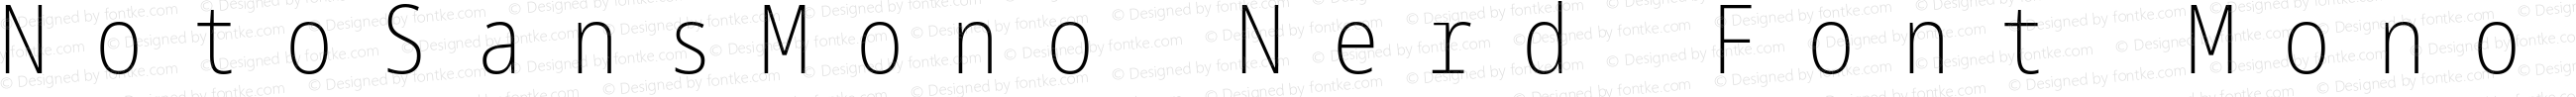 Noto Sans Mono ExtraCondensed ExtraLight Nerd Font Complete Mono